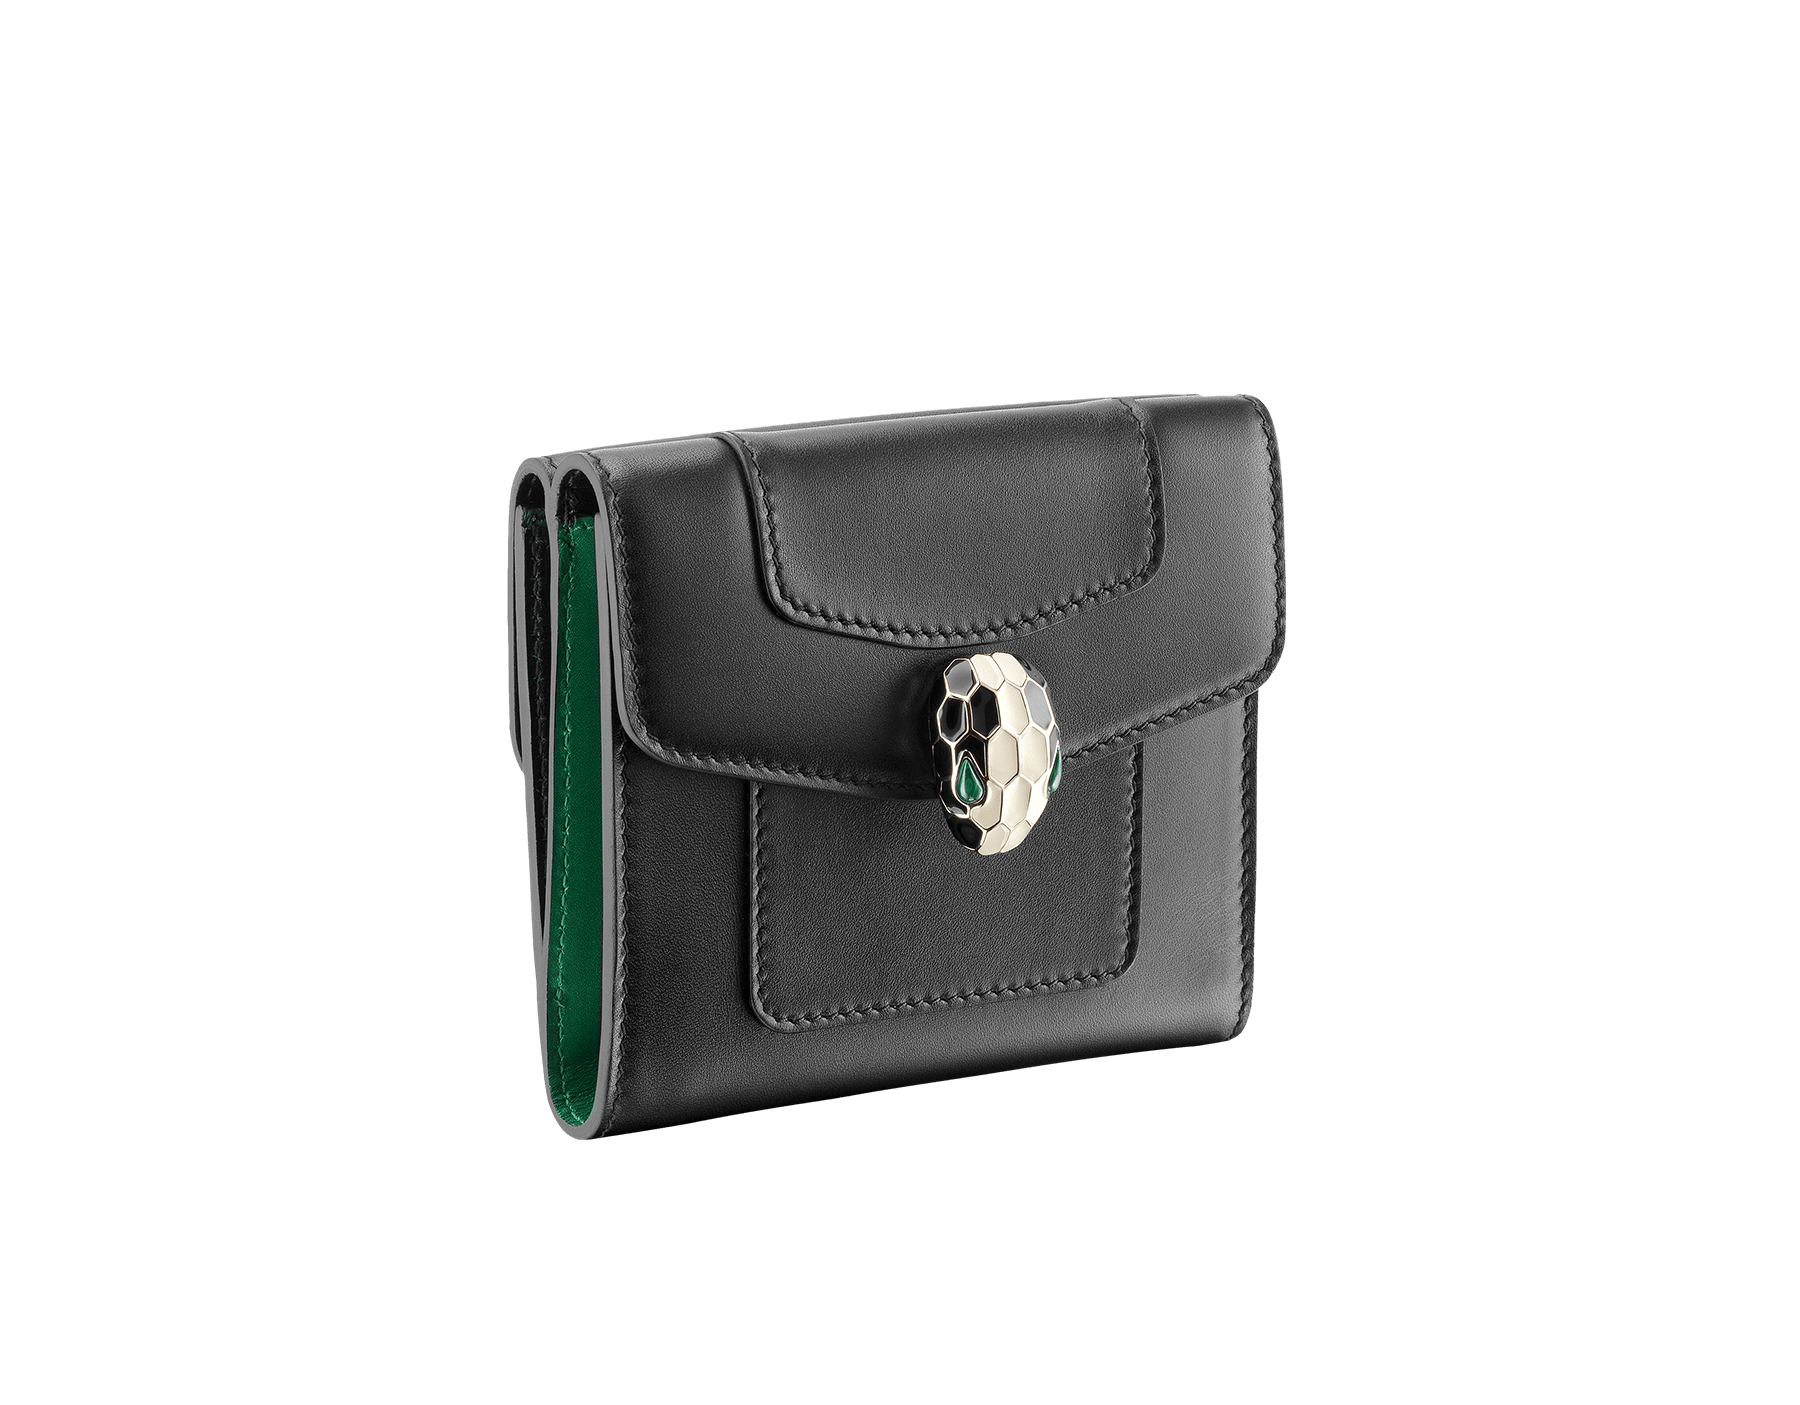 bvlgari women's wallet